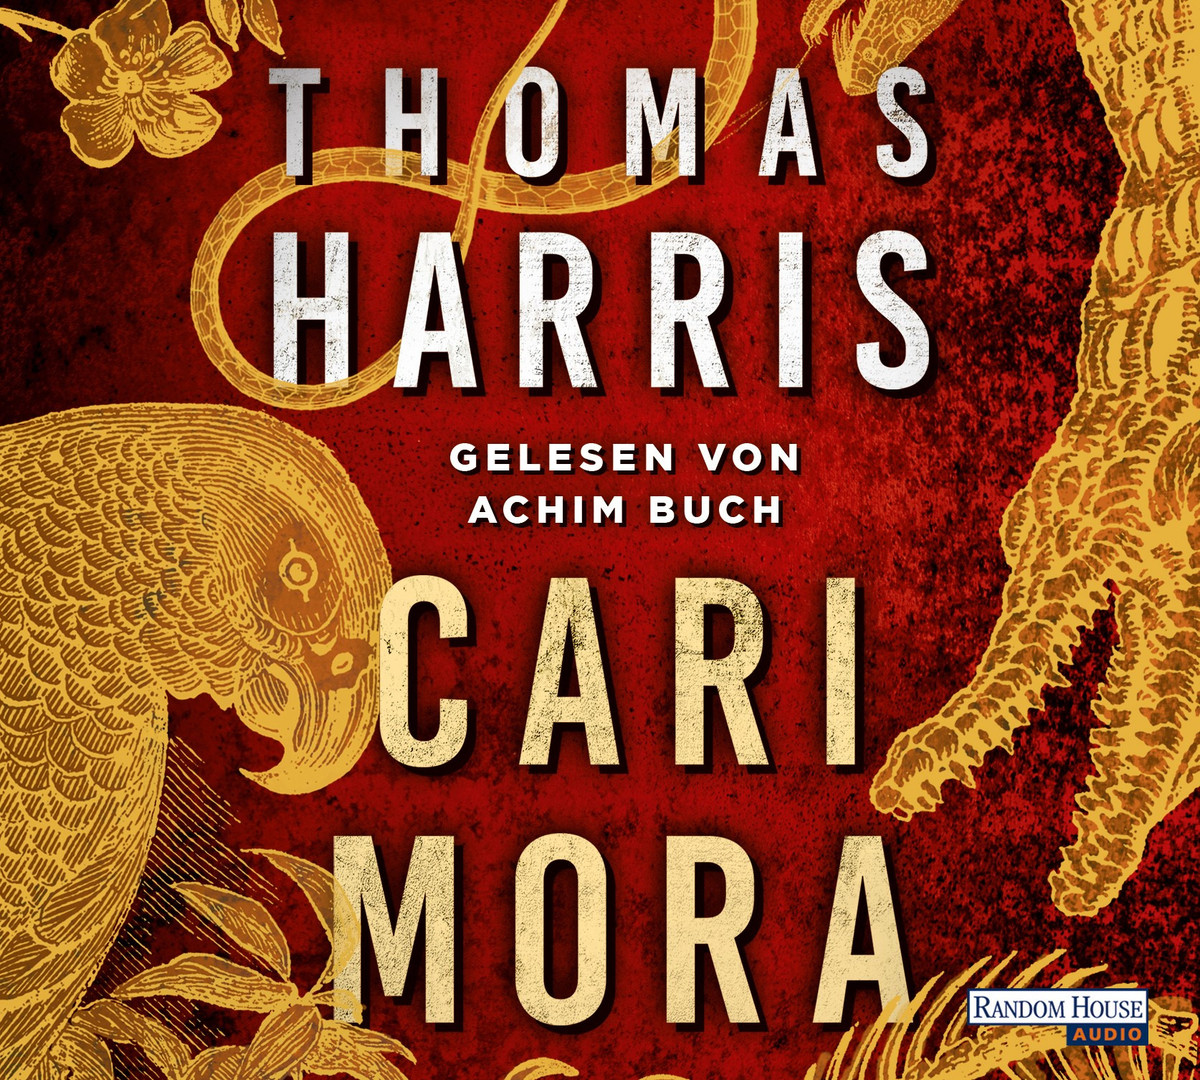 Thomas Harris - Cari Mora